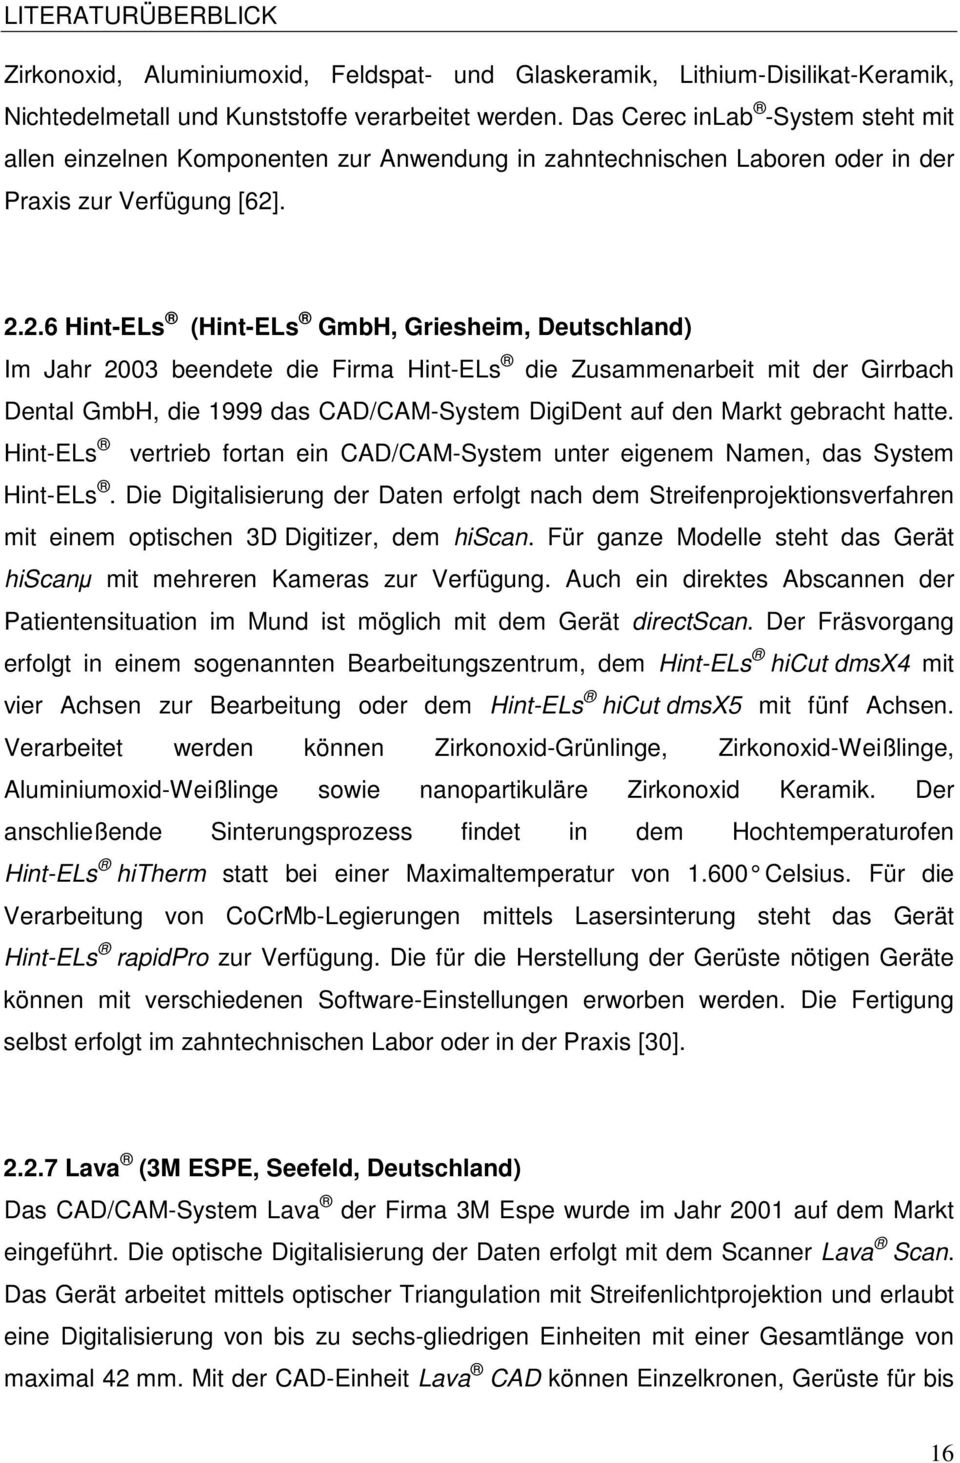 . 2.2.6 Hint-ELs (Hint-ELs GmbH, Griesheim, Deutschland) Im Jahr 2003 beendete die Firma Hint-ELs die Zusammenarbeit mit der Girrbach Dental GmbH, die 1999 das CAD/CAM-System DigiDent auf den Markt